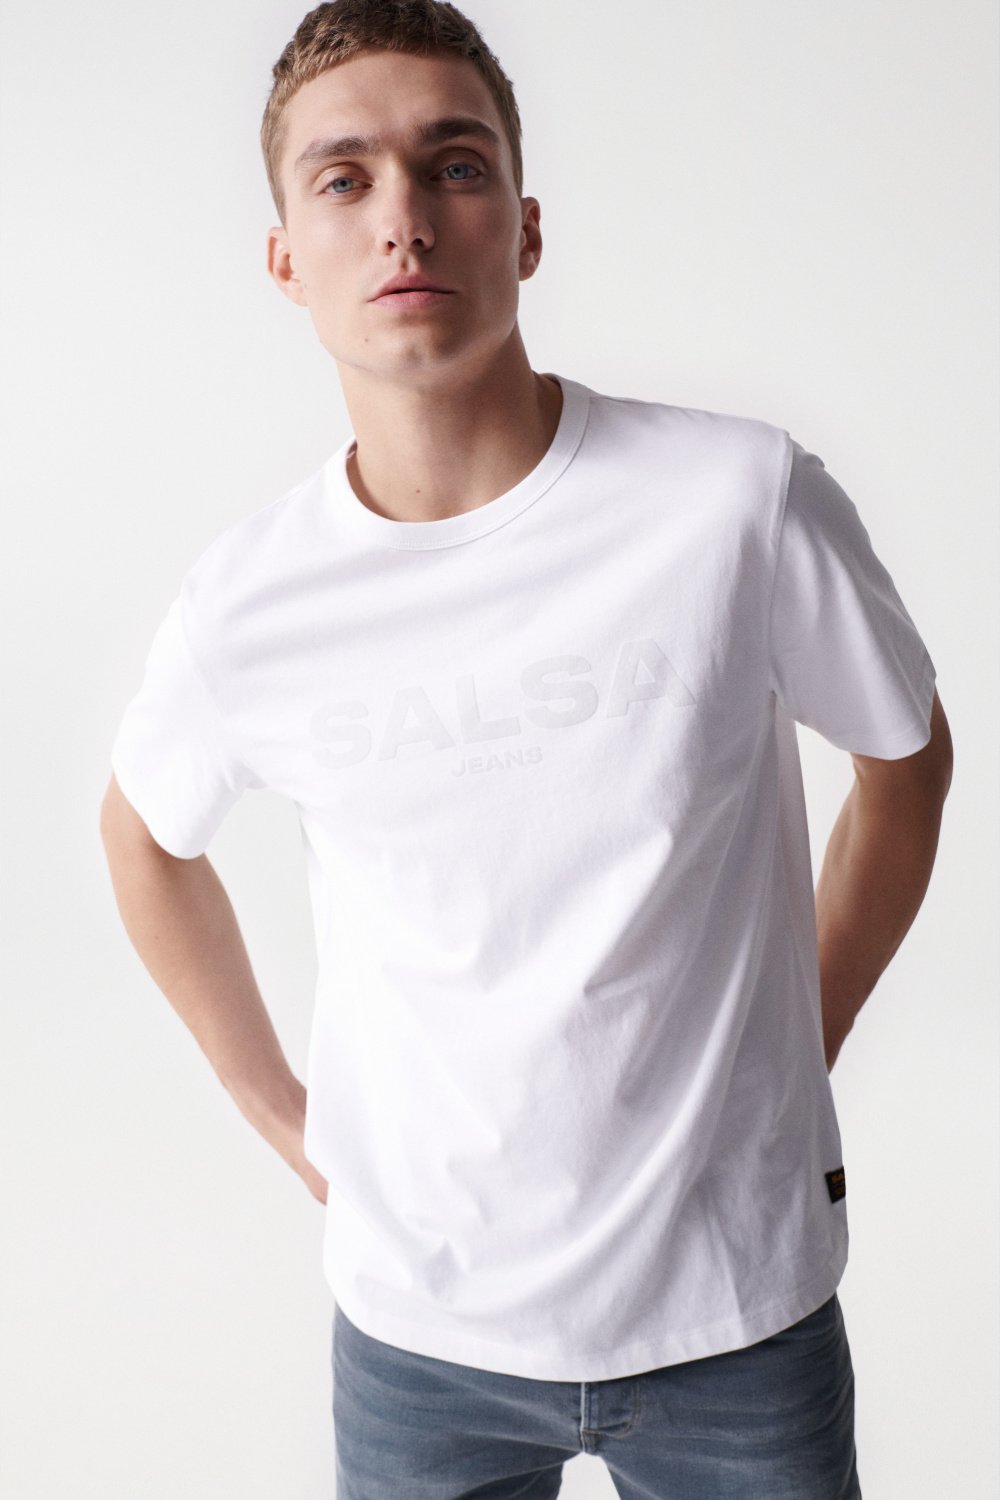 Camiseta con branding aterciopelado - Salsa